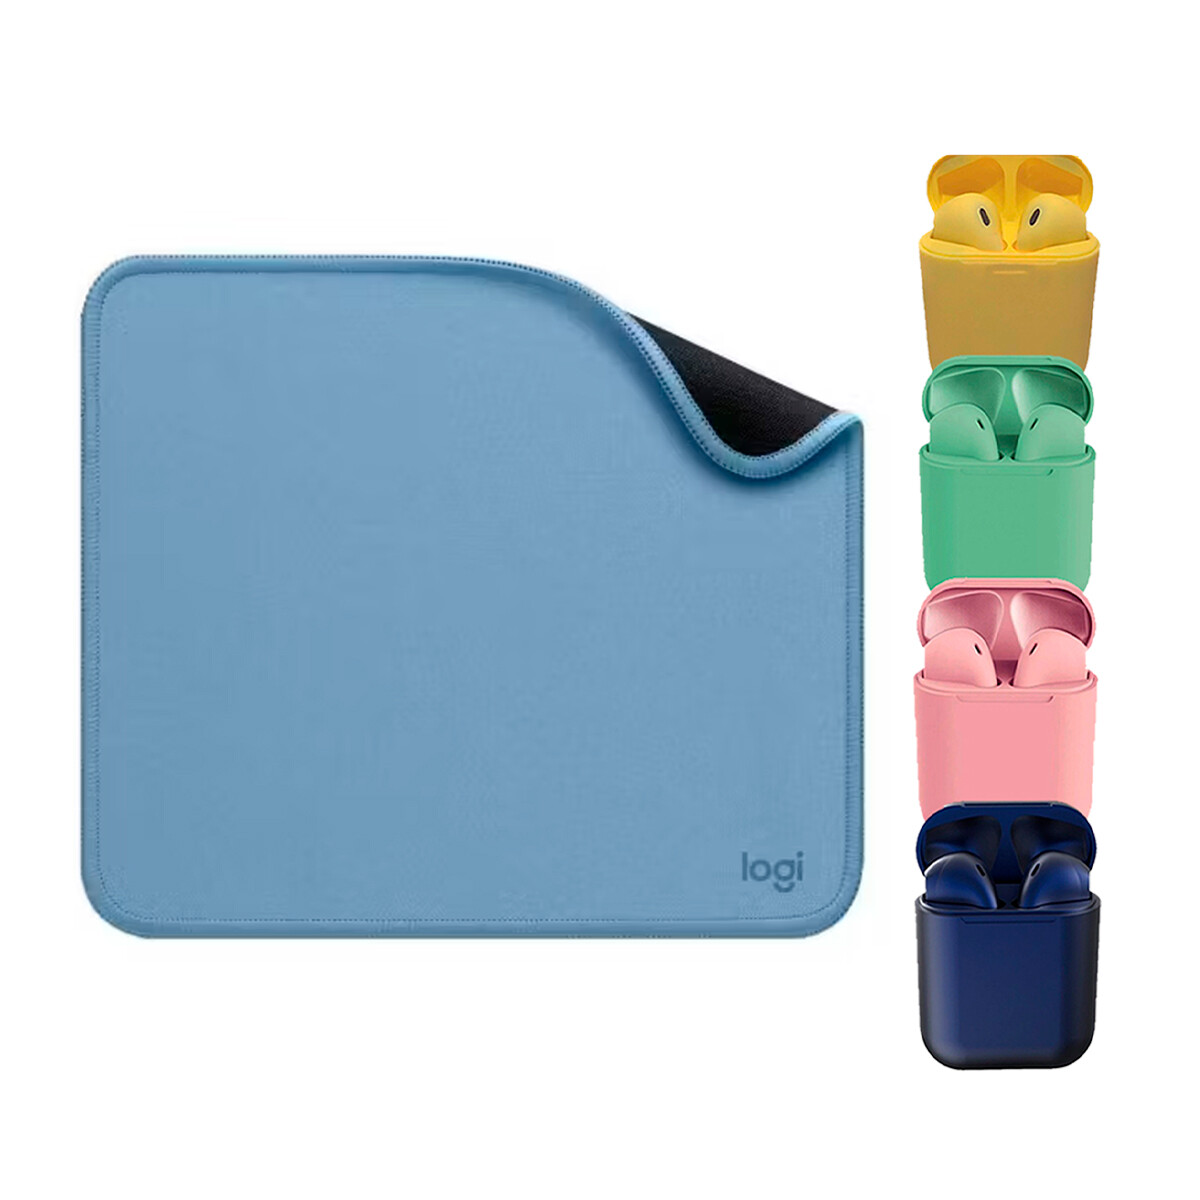 Mouse Pad Studio Series 23x20cm Blue Logitech + Auriculares 